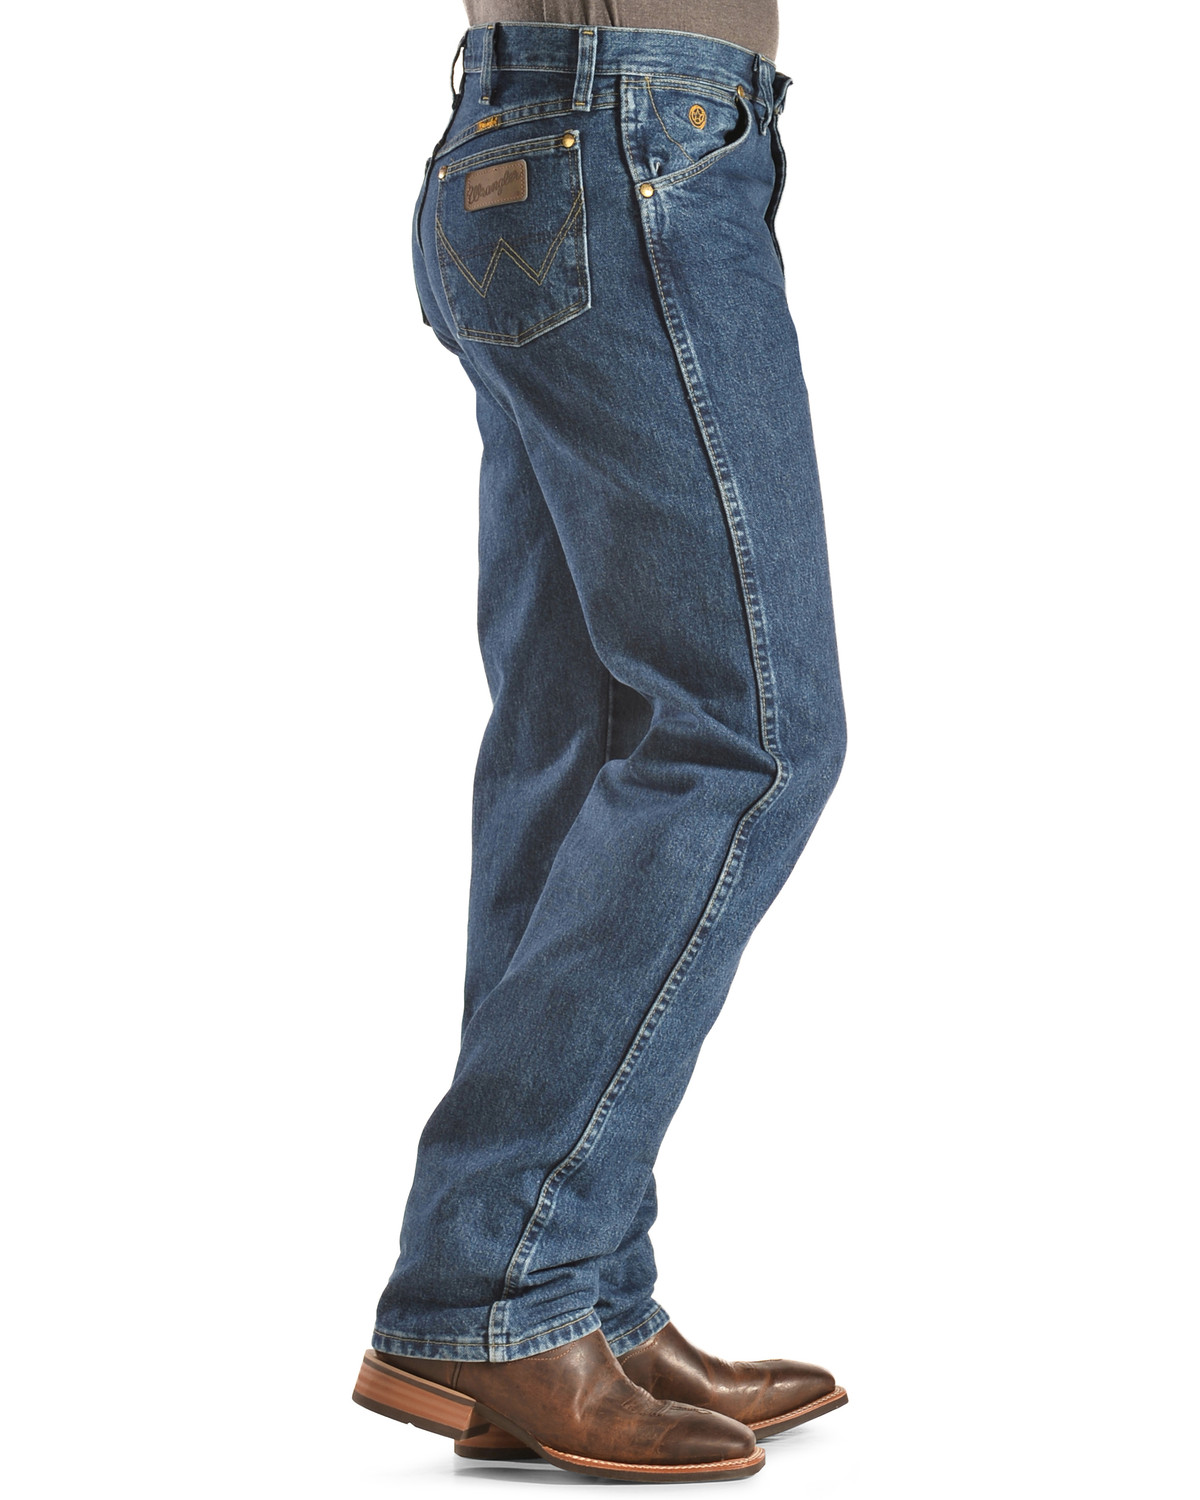 original wrangler jeans